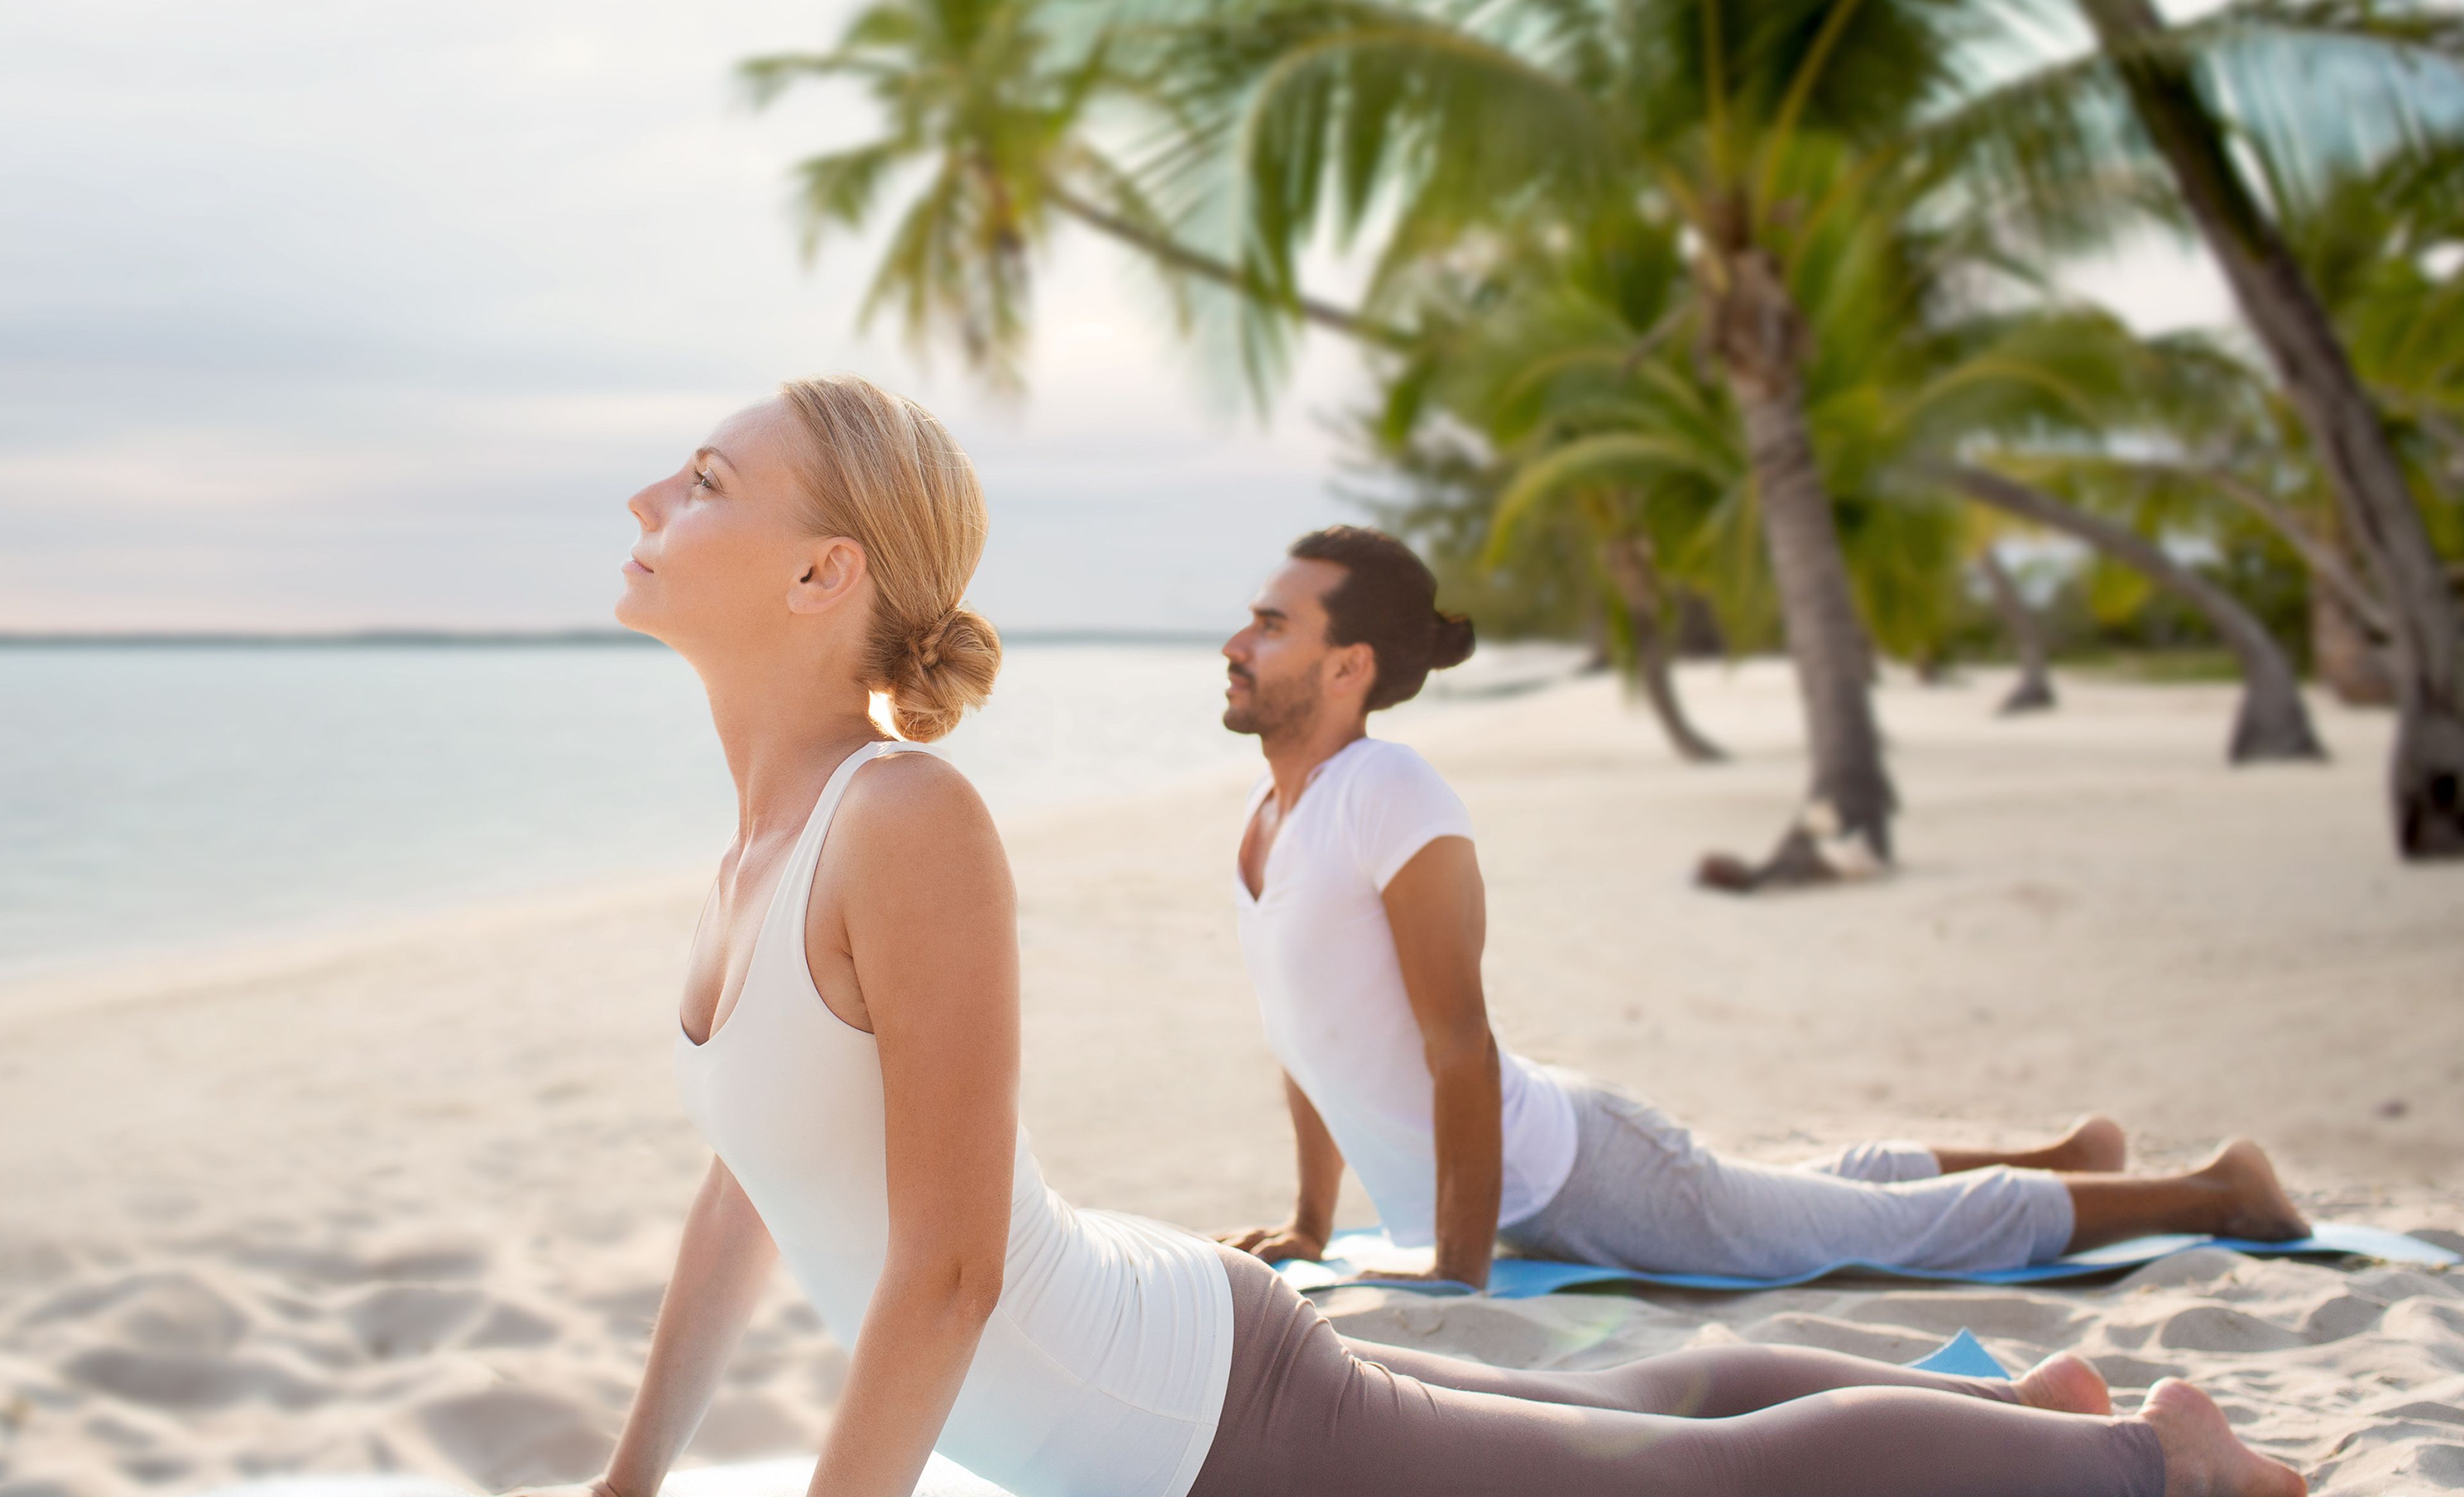 Zwei Menschen beim Yoga in Kobra Stellung am Strand